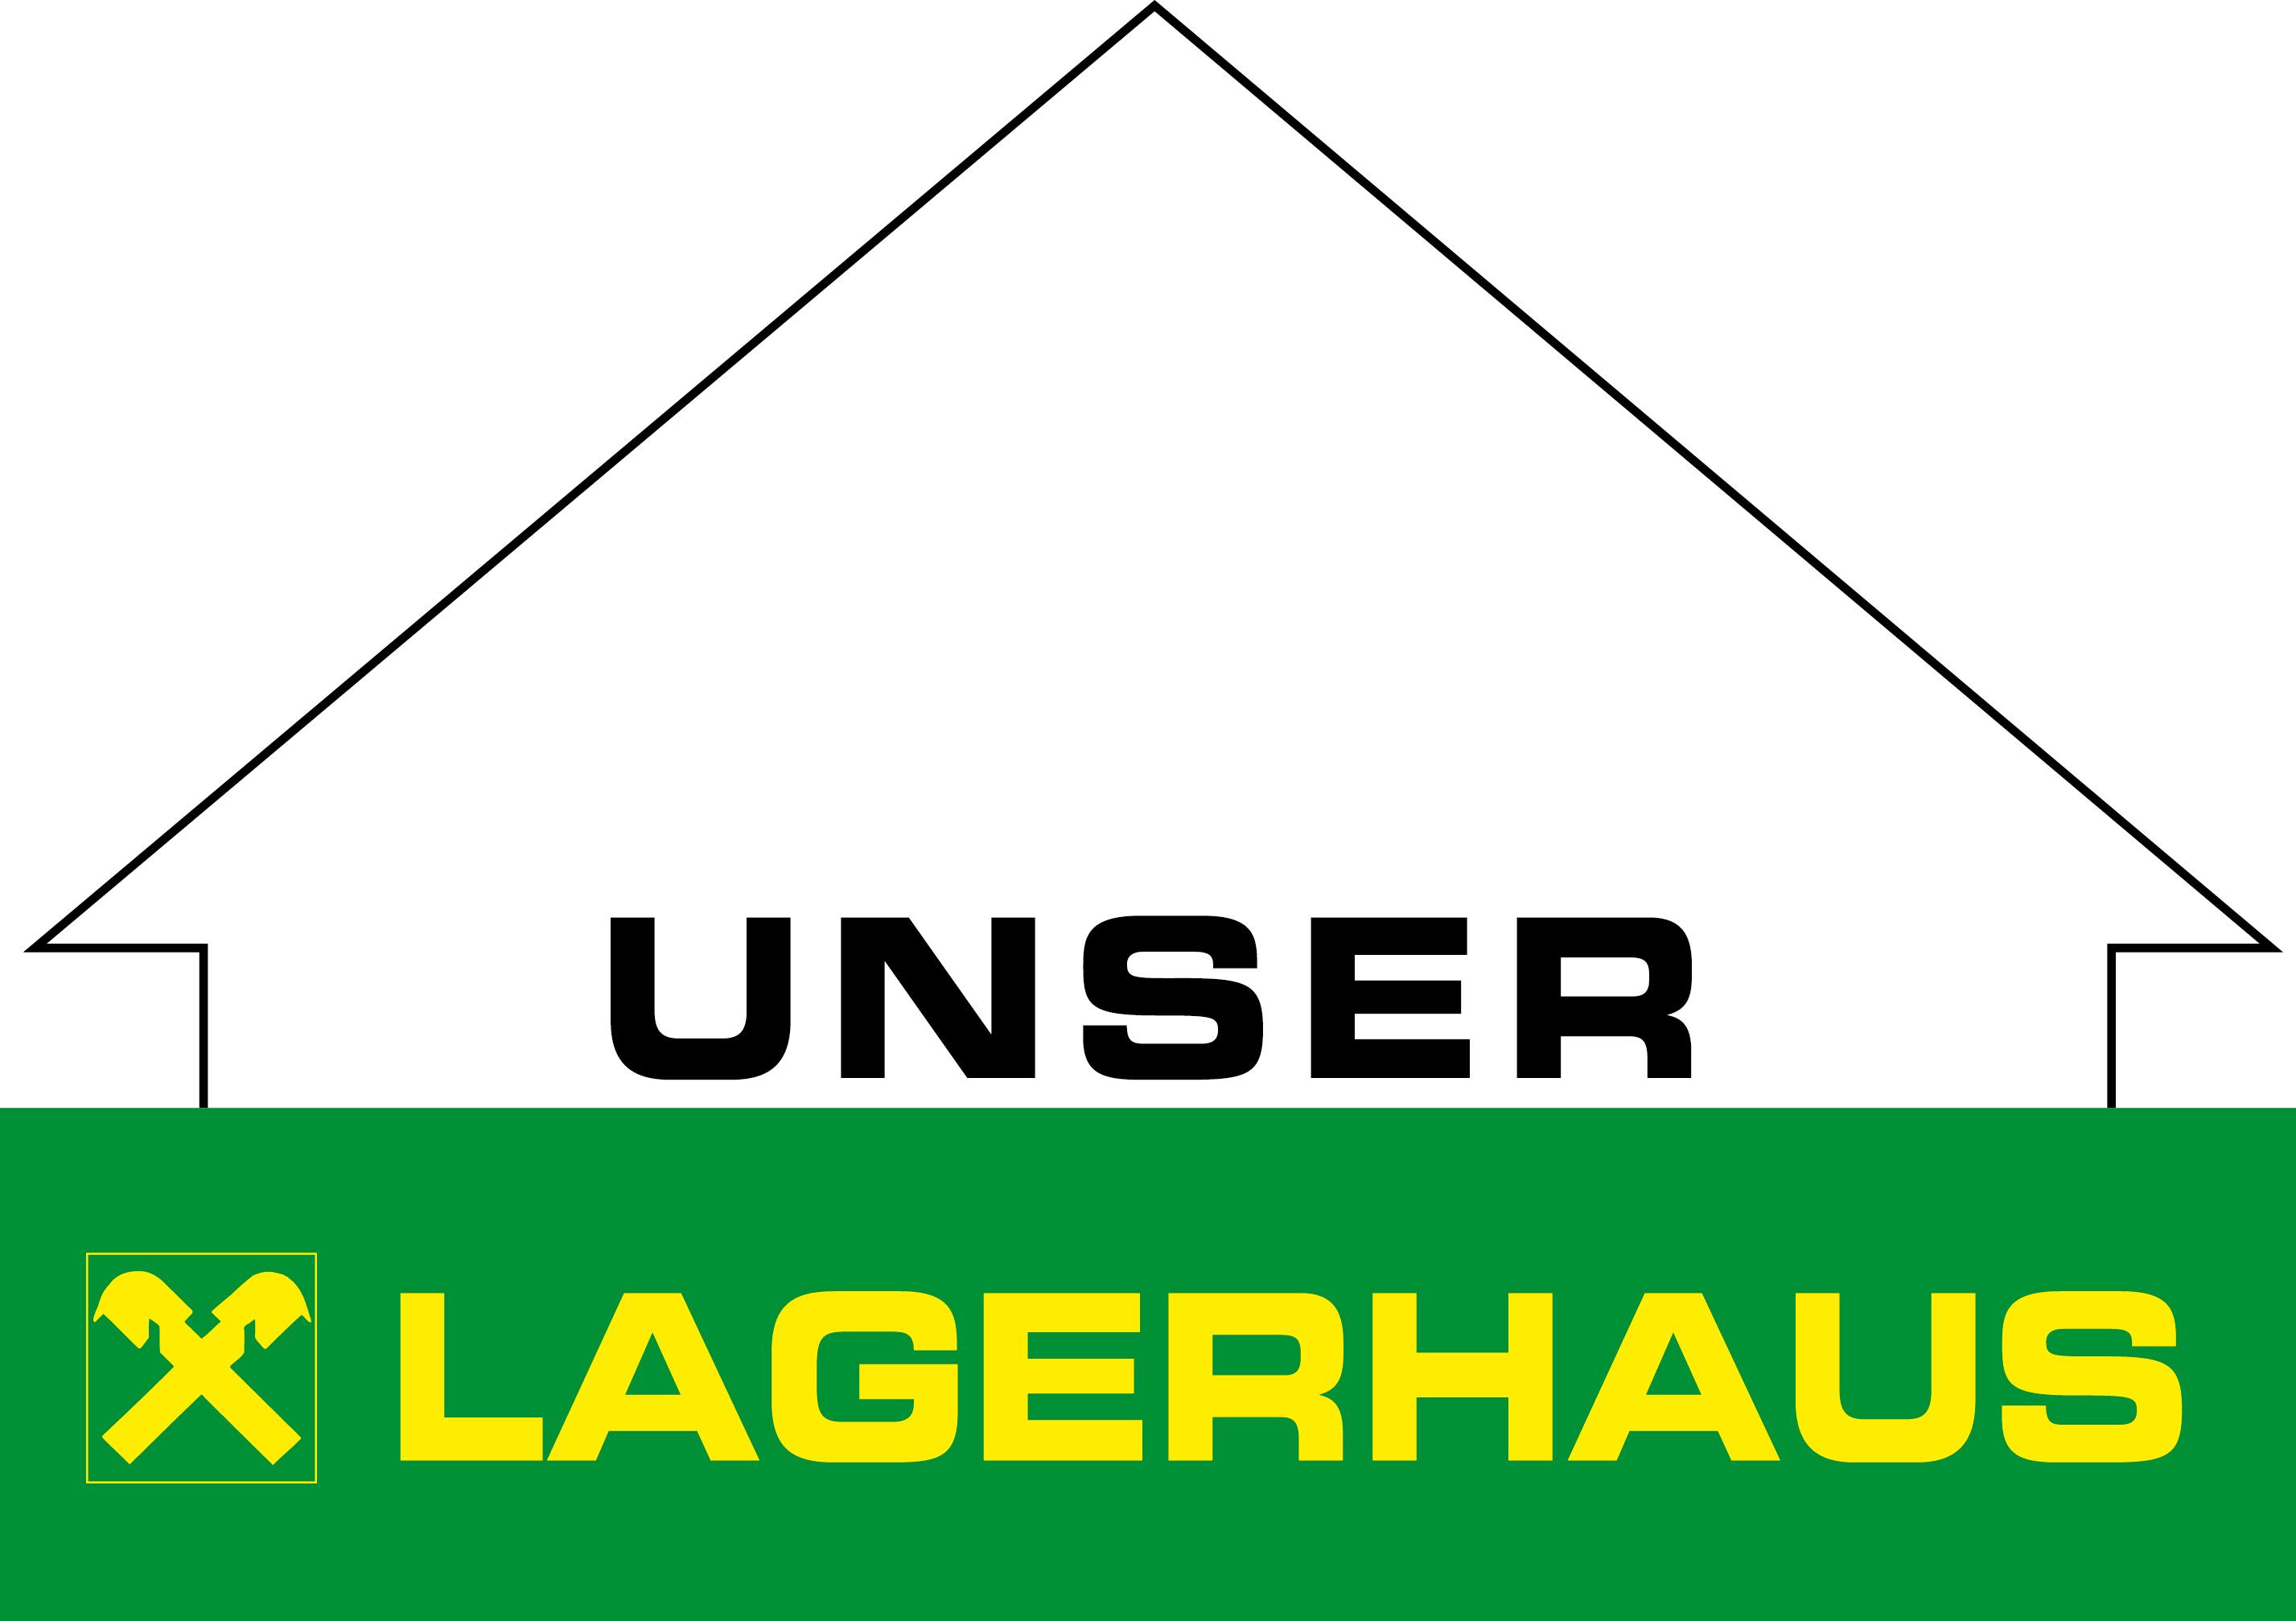 Landforst Obersteirische Molkerei Lagerhaus Co.KG